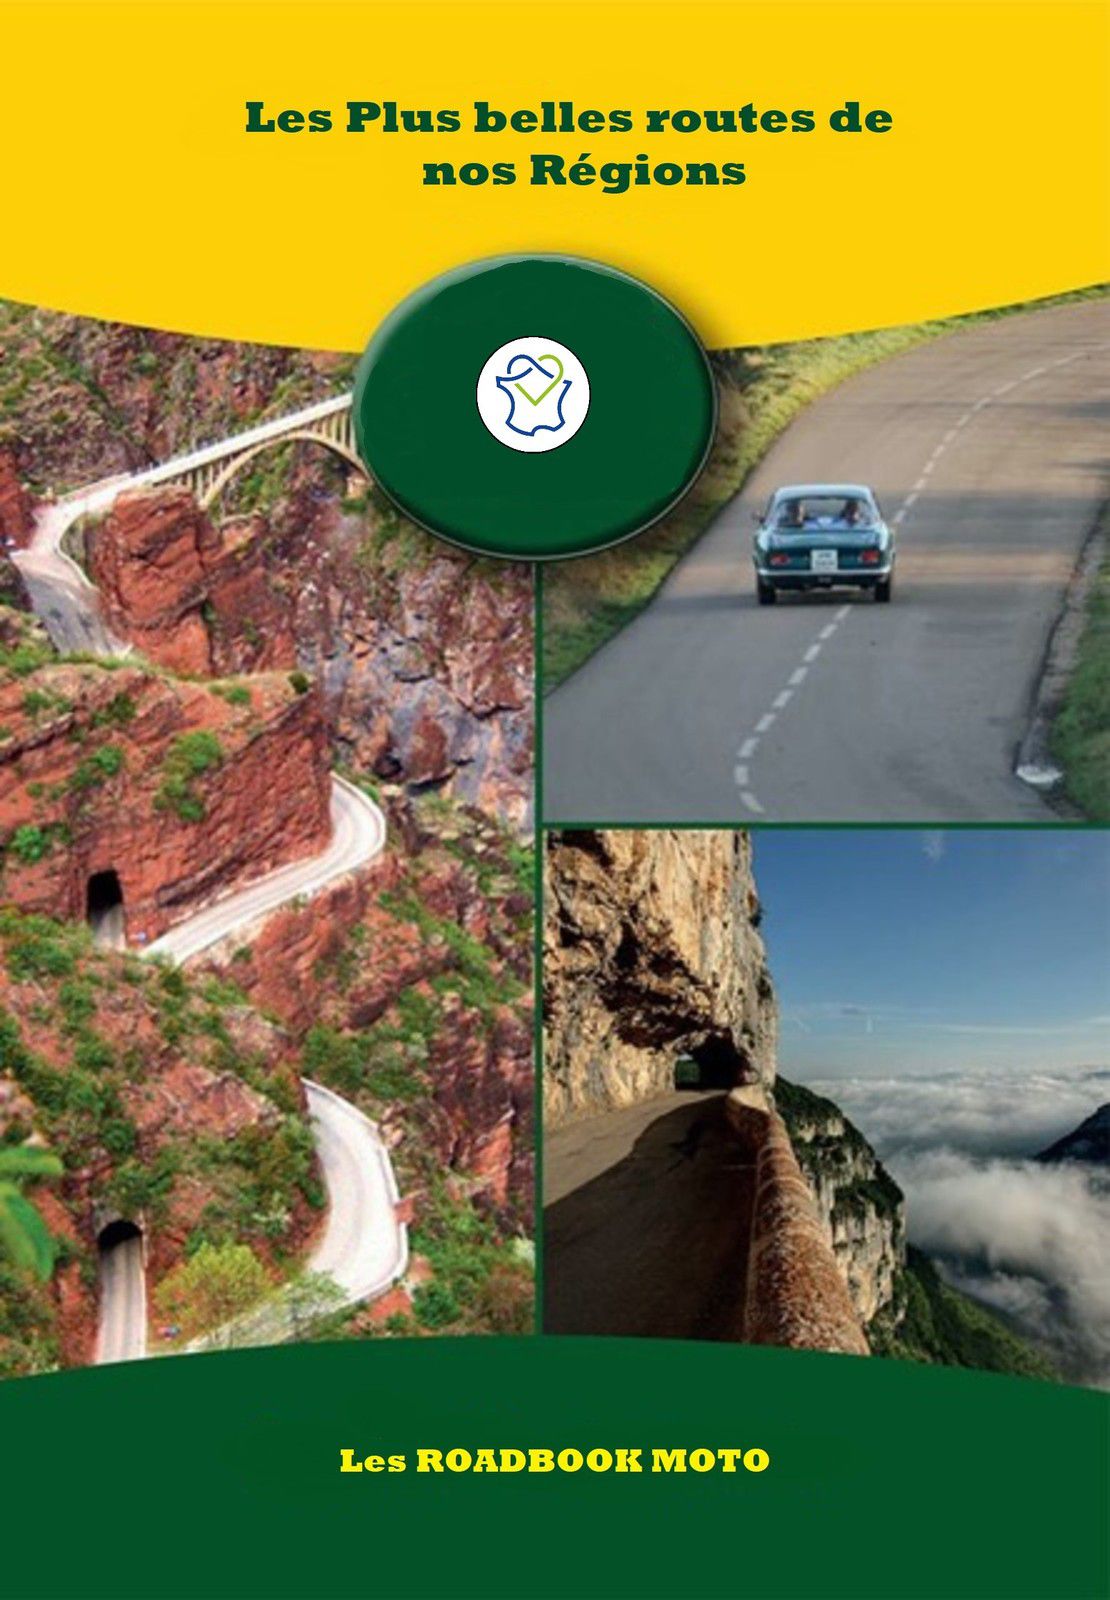 Les Roadbook de nos Régions - BaladaDom